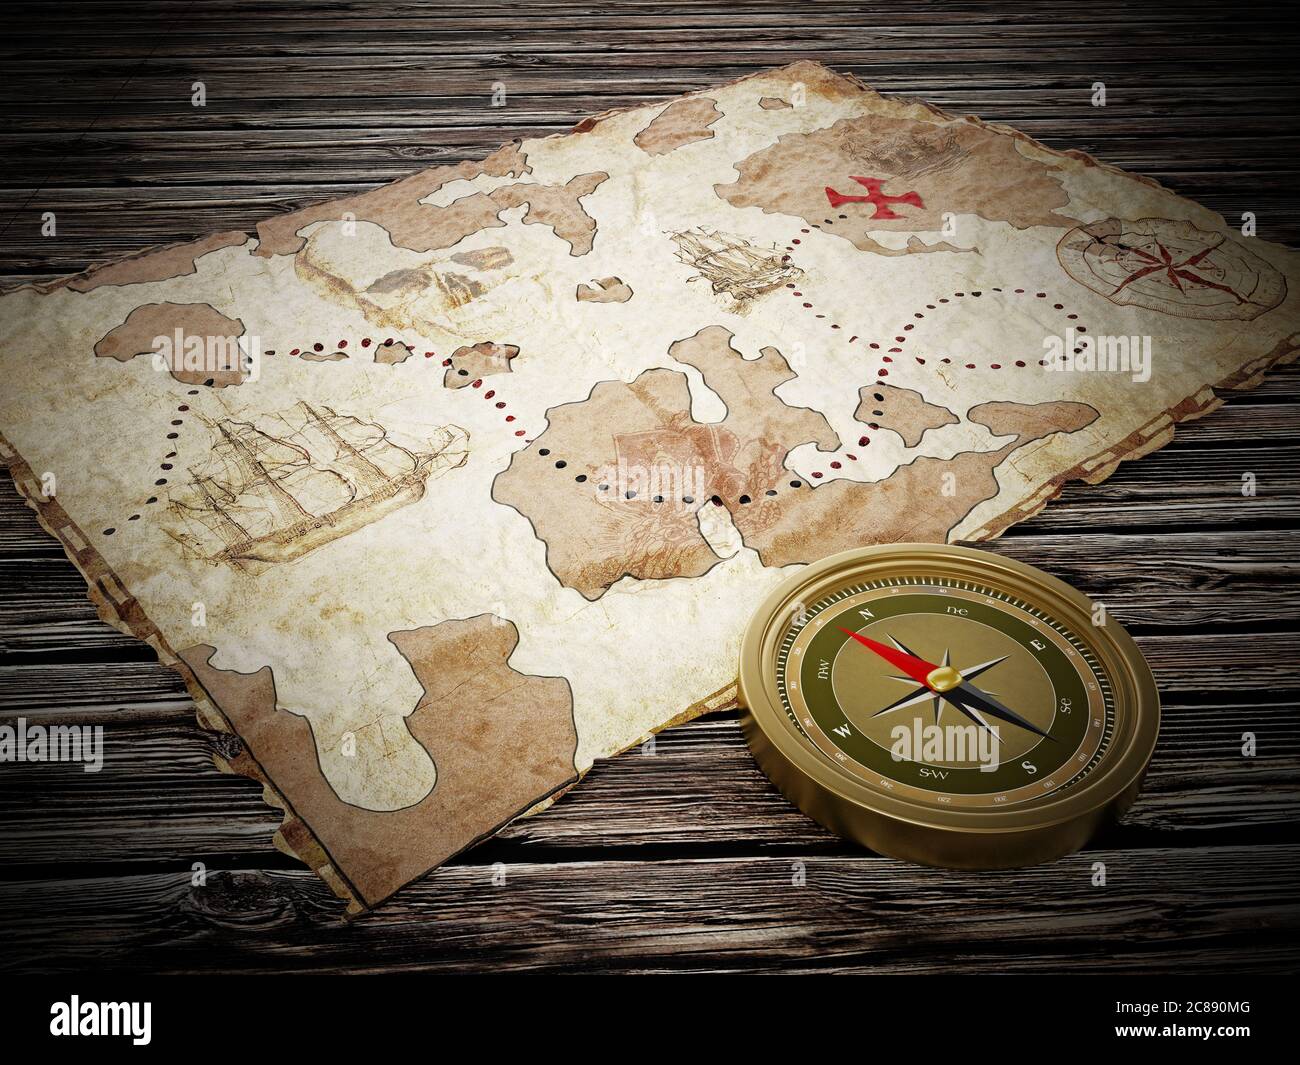 Carte du Trésor et boussole vintage sur une ancienne table en bois. Illustration 3D. Banque D'Images